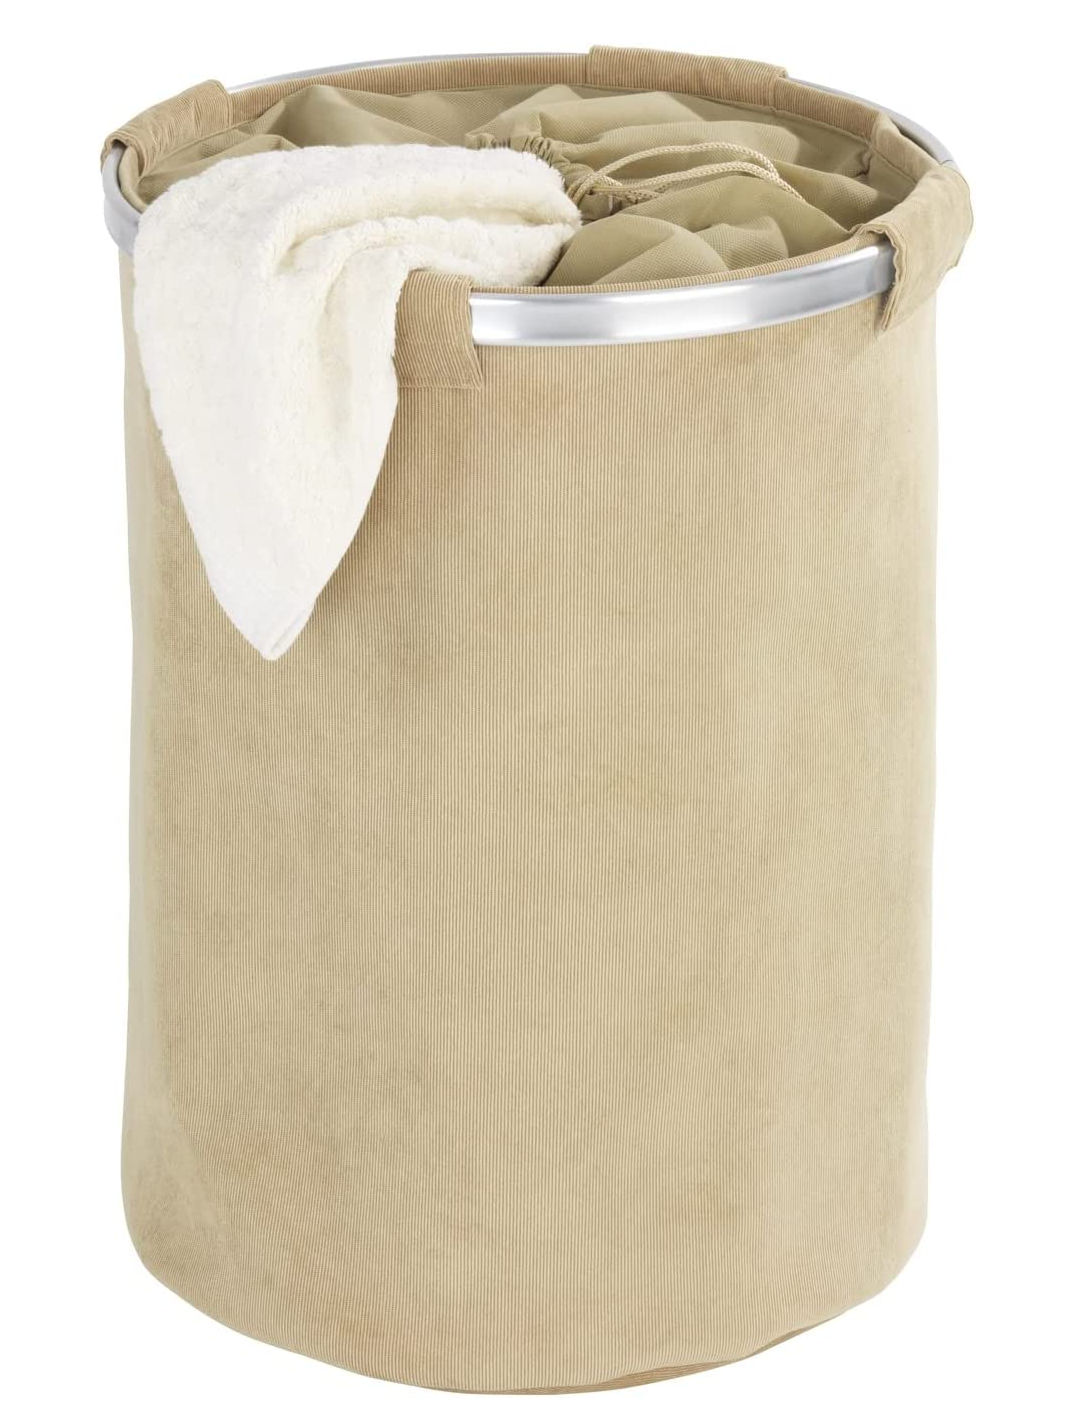 WENKO Wäschesammler Cordoba in beige - 68 L - Stoff Wäschekorb mit Sichtschutz-Abdeckung